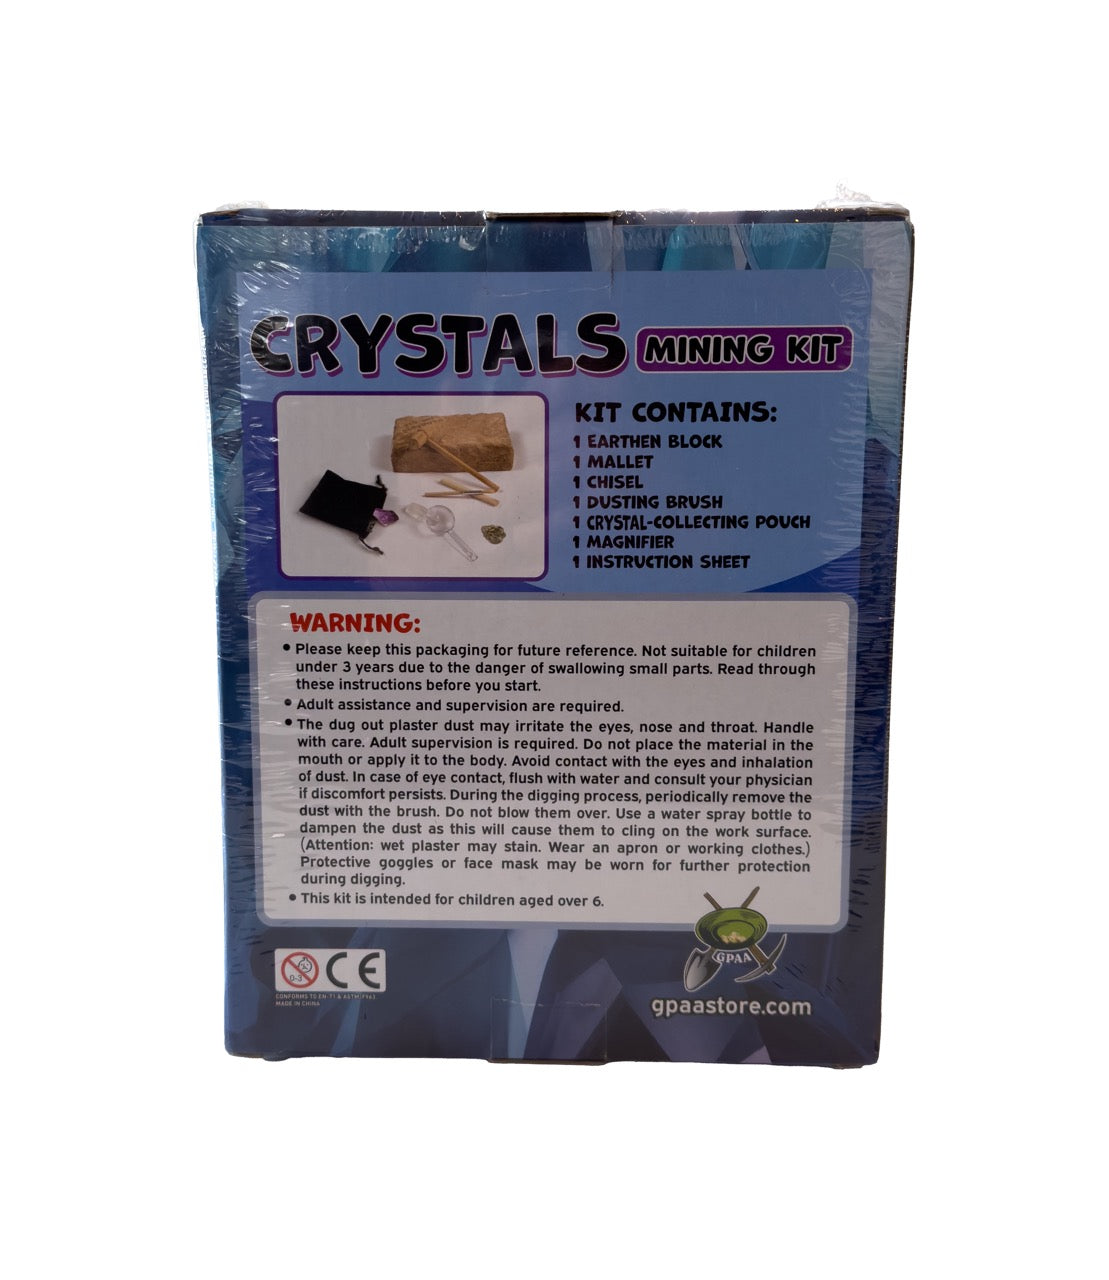 Crystals Mining Kit